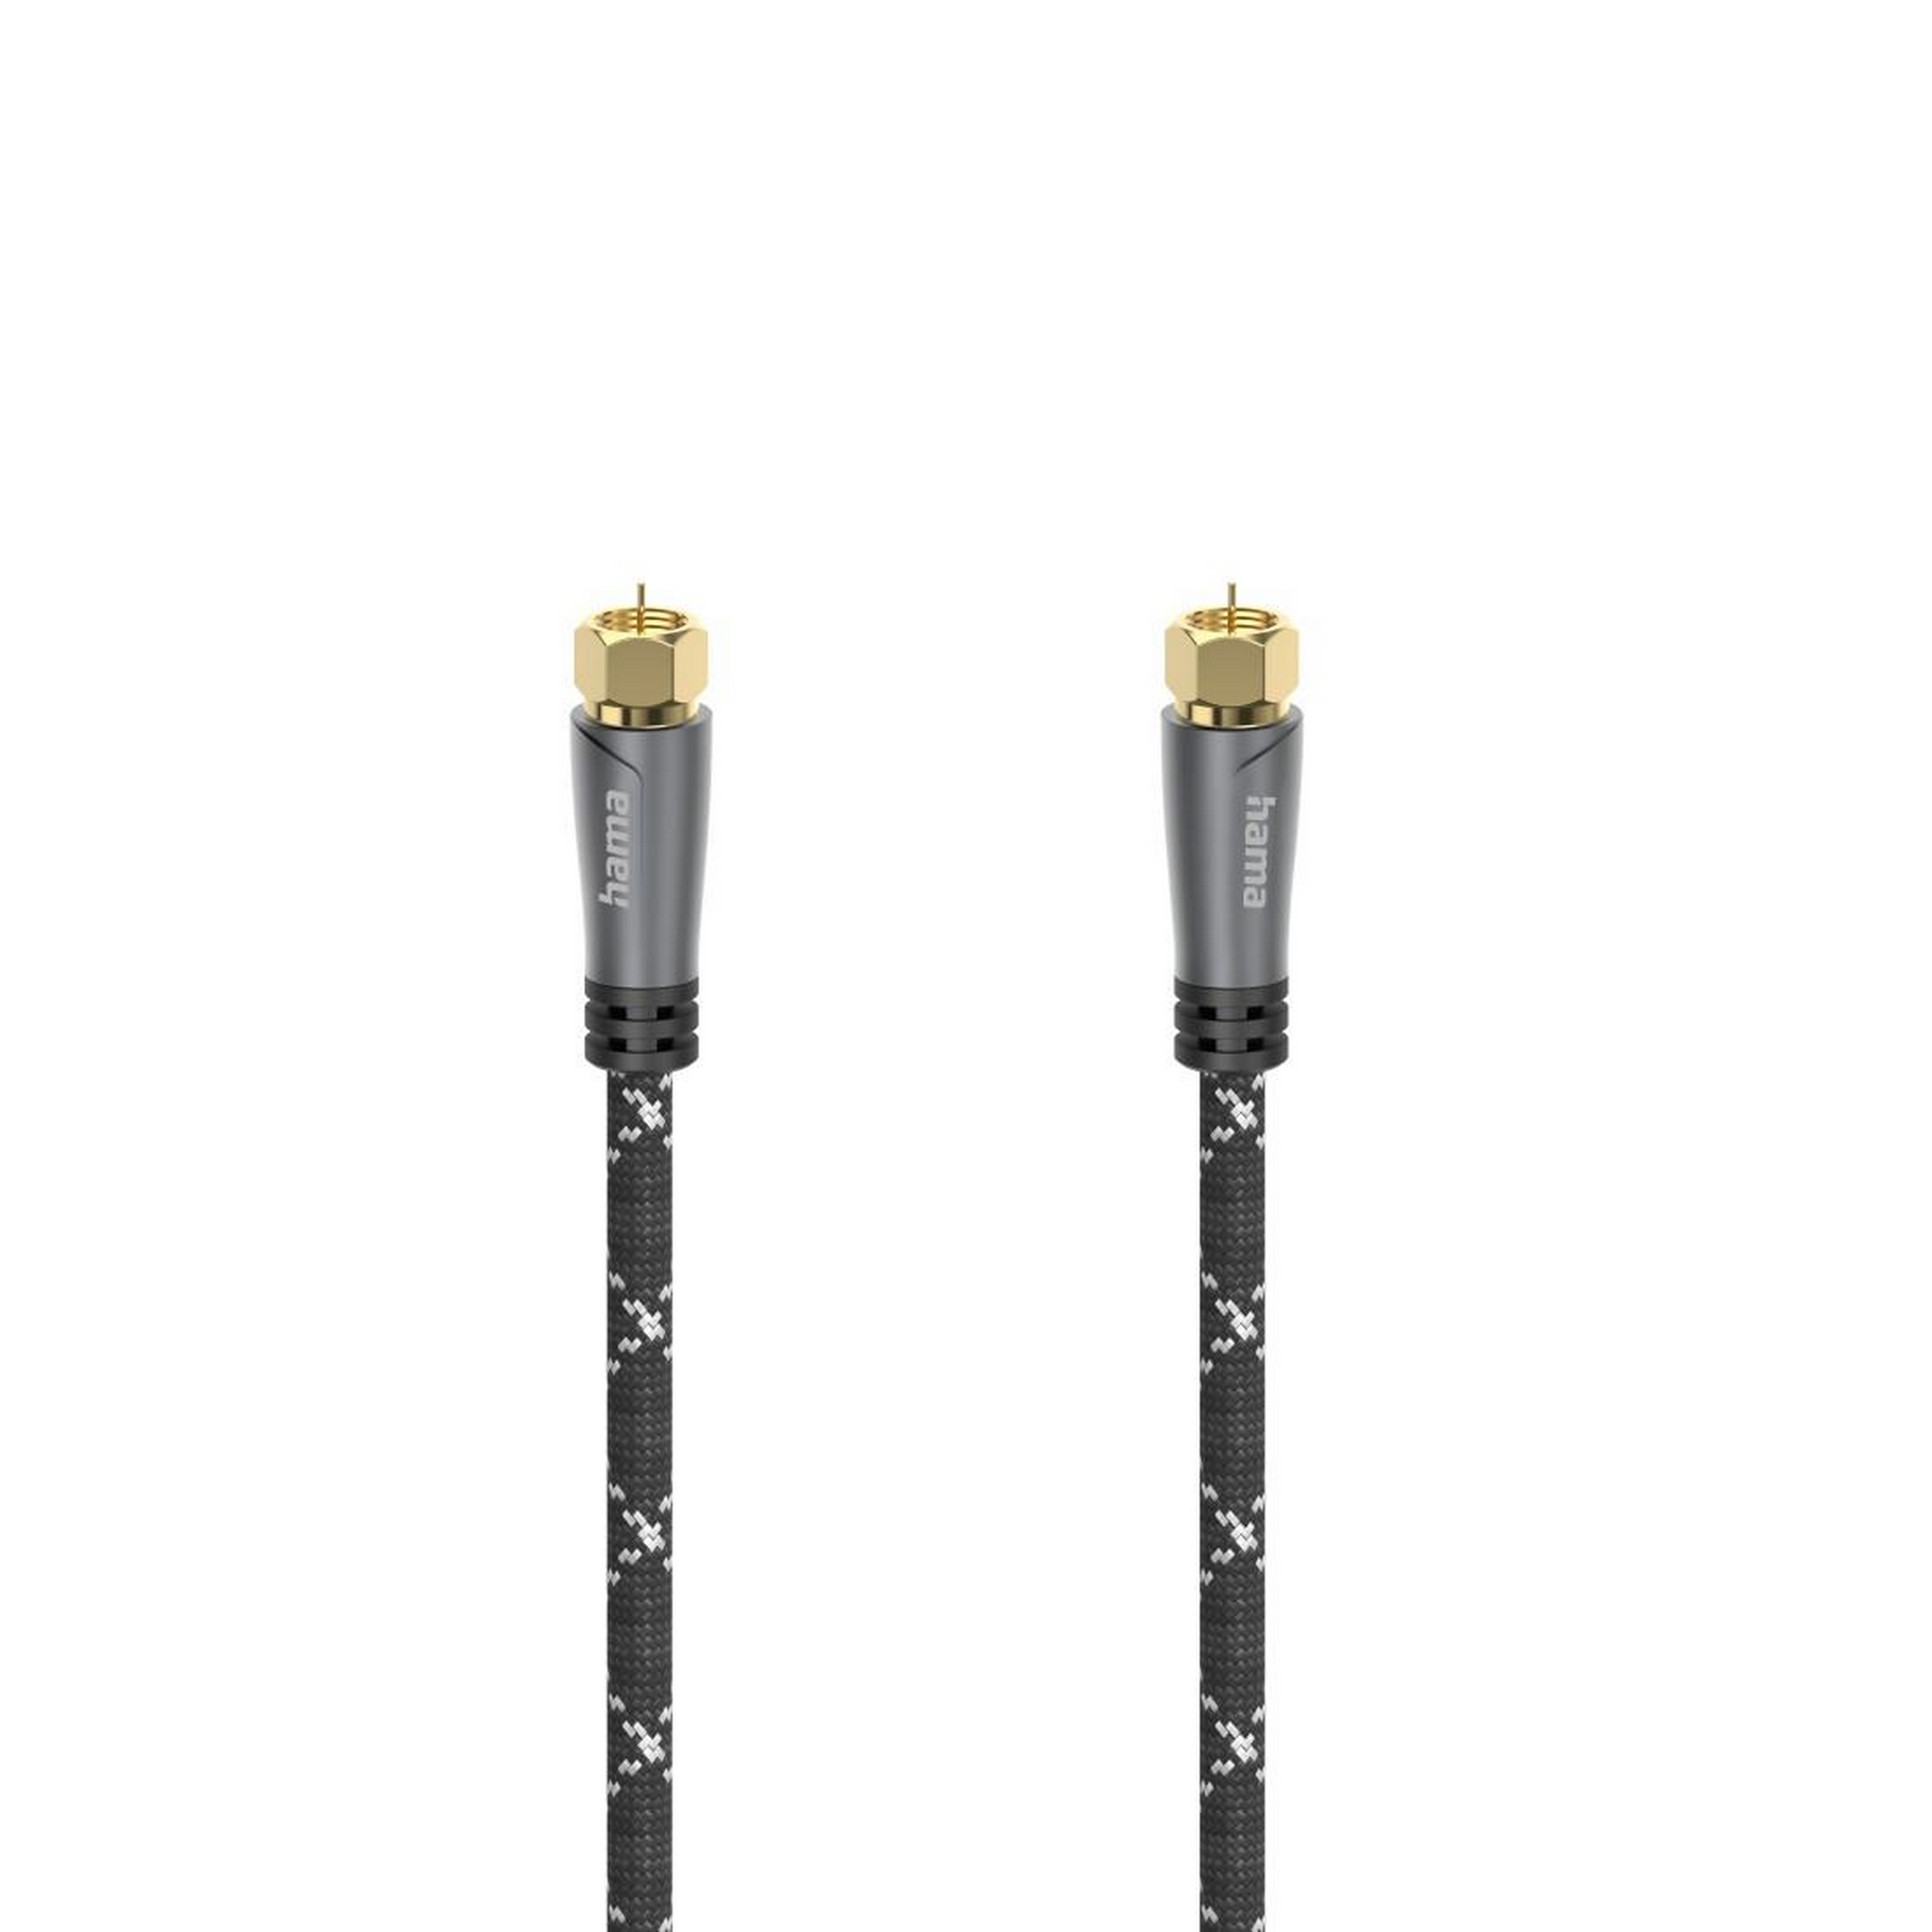 SAT-Anschlusskabel vergoldet F-Stecker mit F-Stecker 1,5 m + product picture